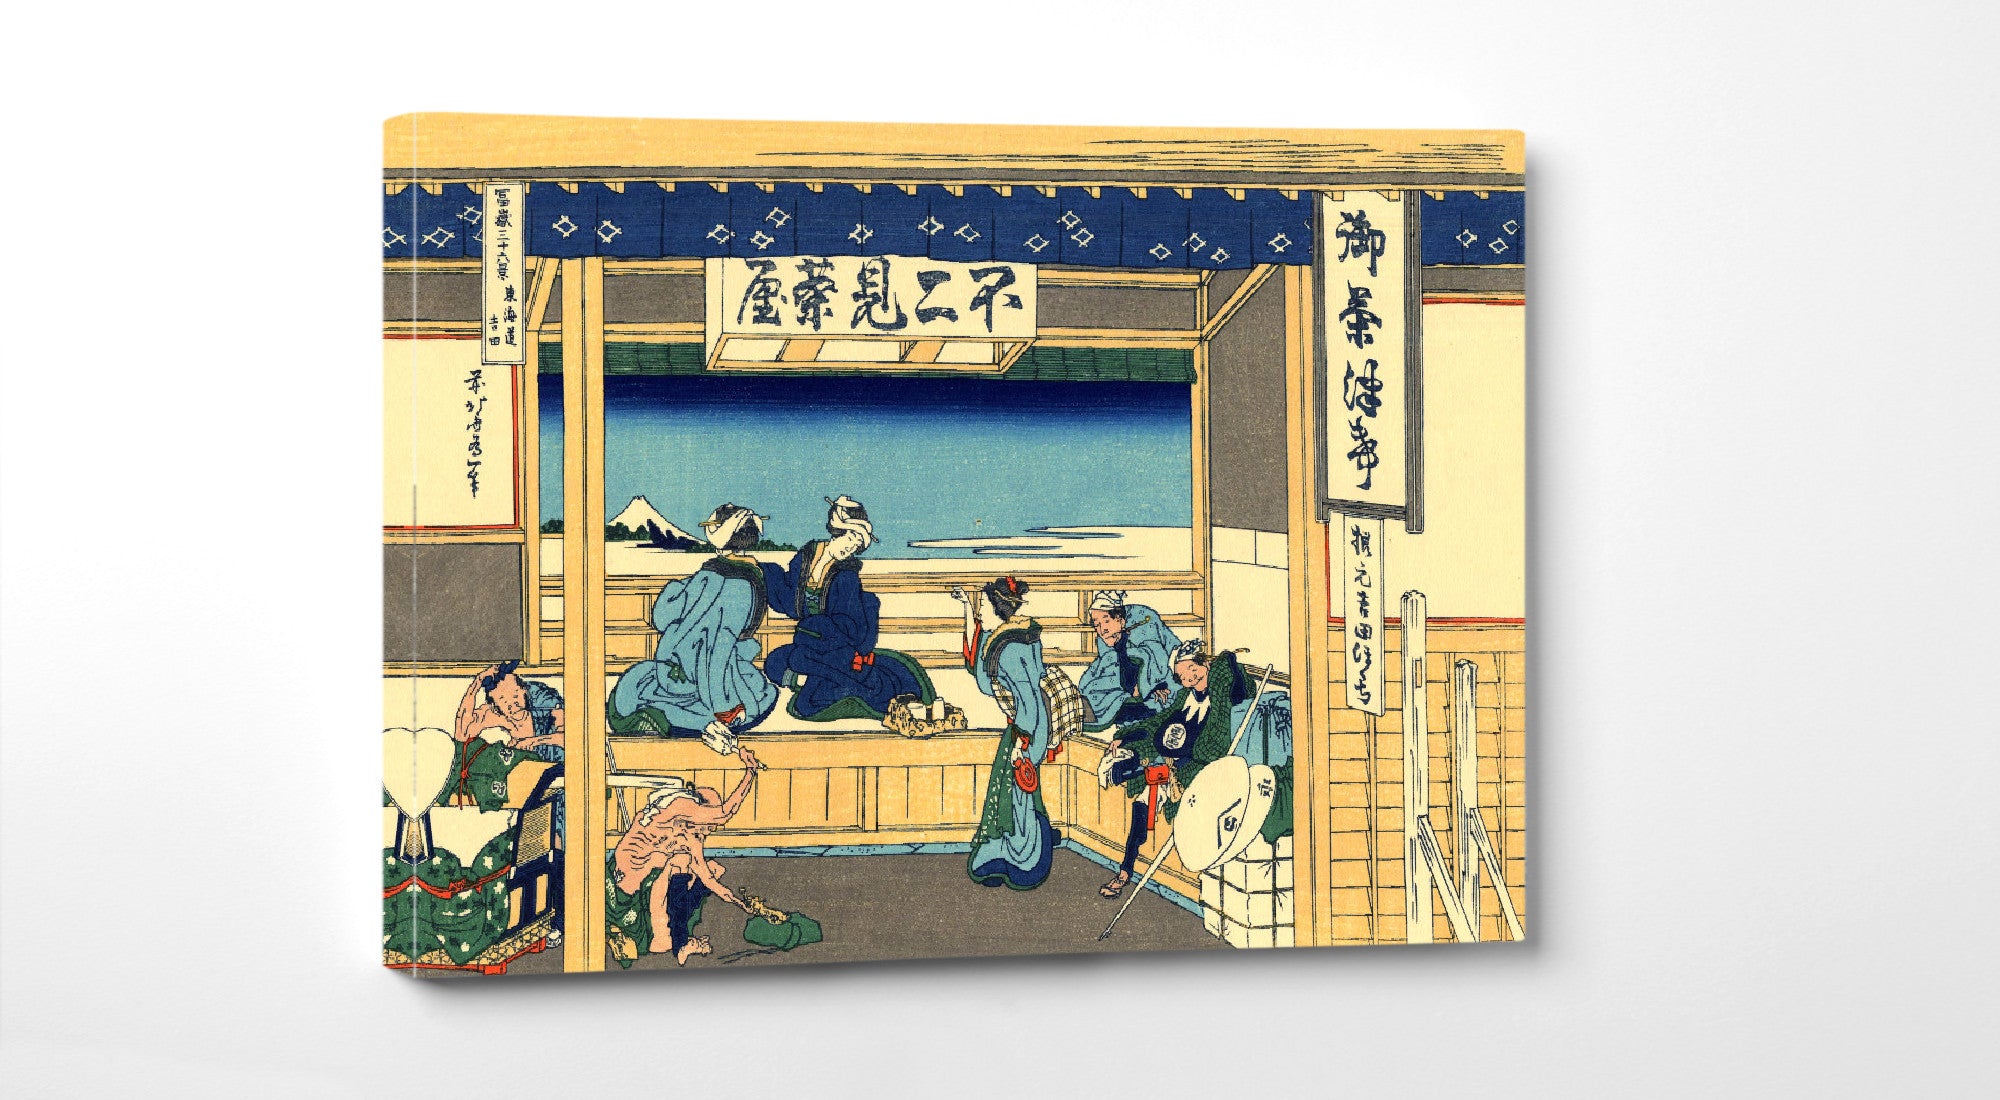 36 Views of Mount Fuji, Yoshida at Tokaido, Katsushika Hokusai, Japanese Print